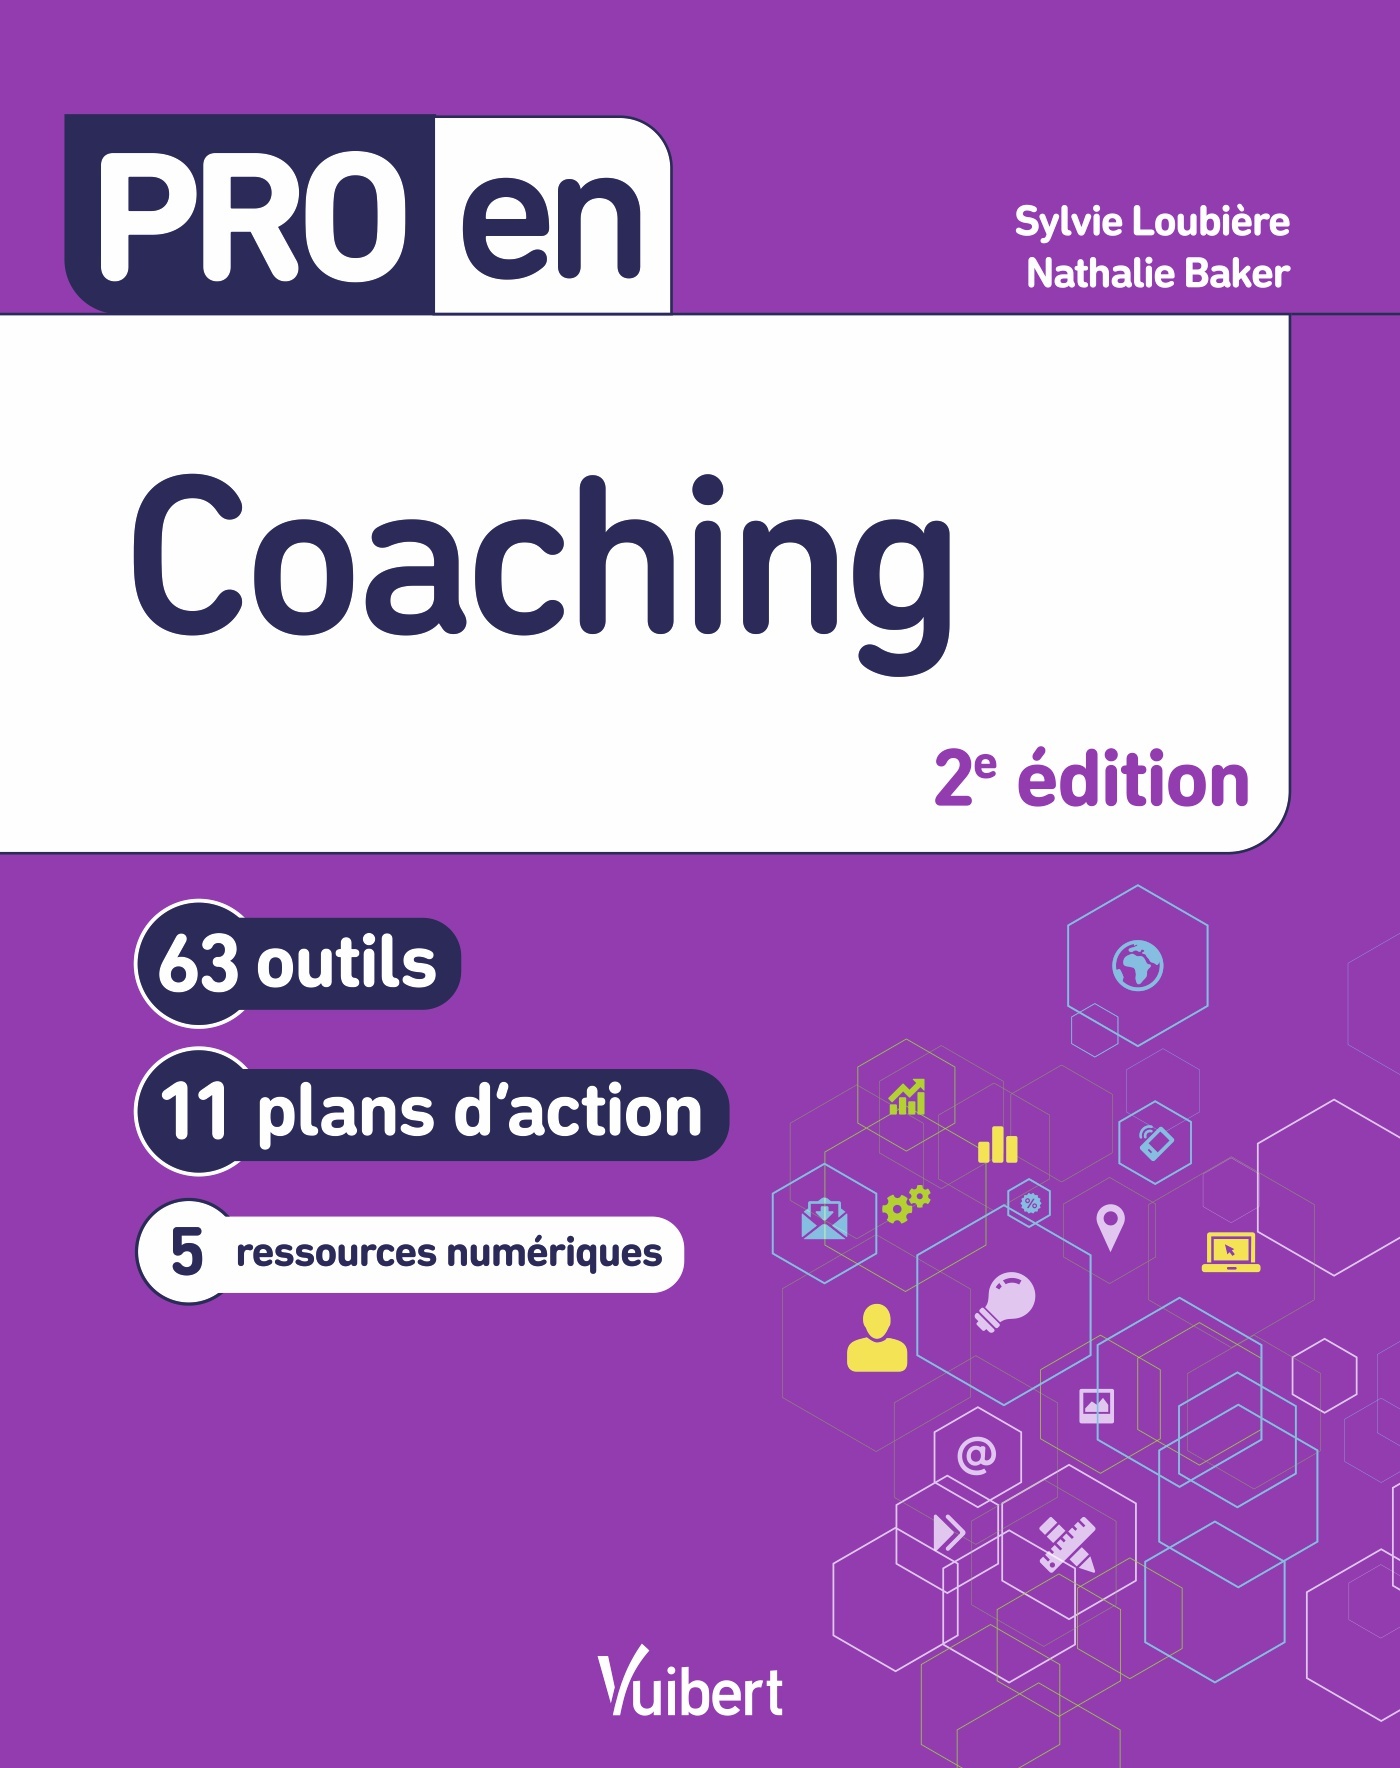 Pro en Coaching | Vuibert